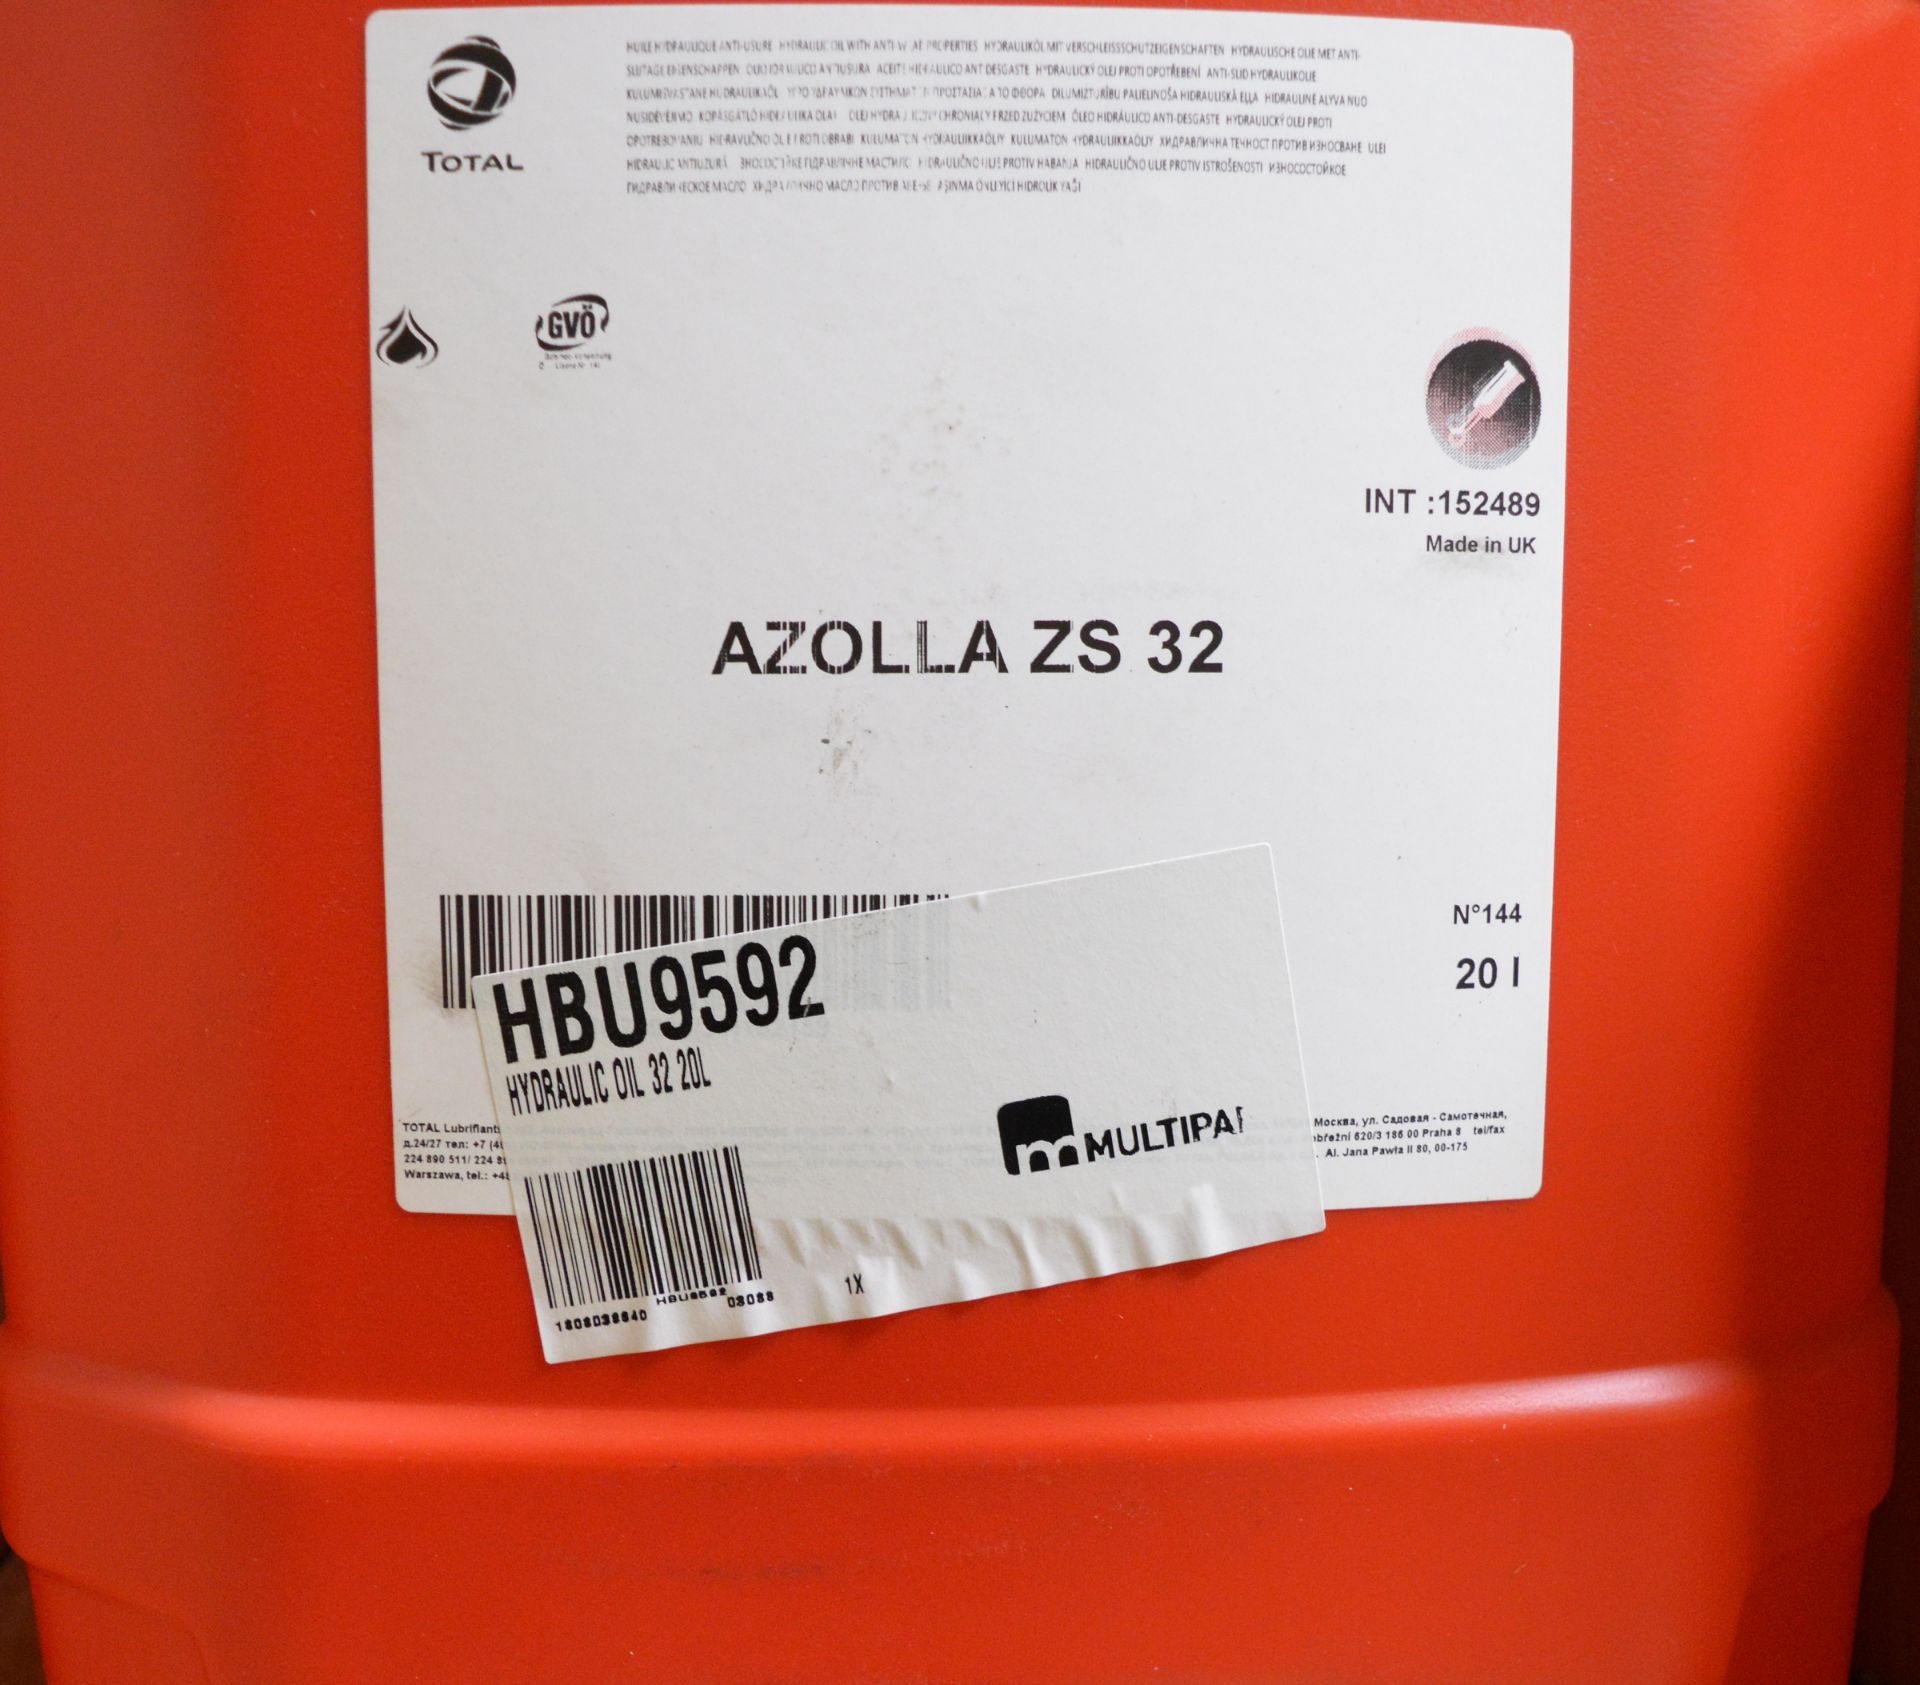 Duck oil multi purpose service spray - 4 per box 3 boxes, Swarfega powerwash & wax 25ltr t - Image 2 of 6